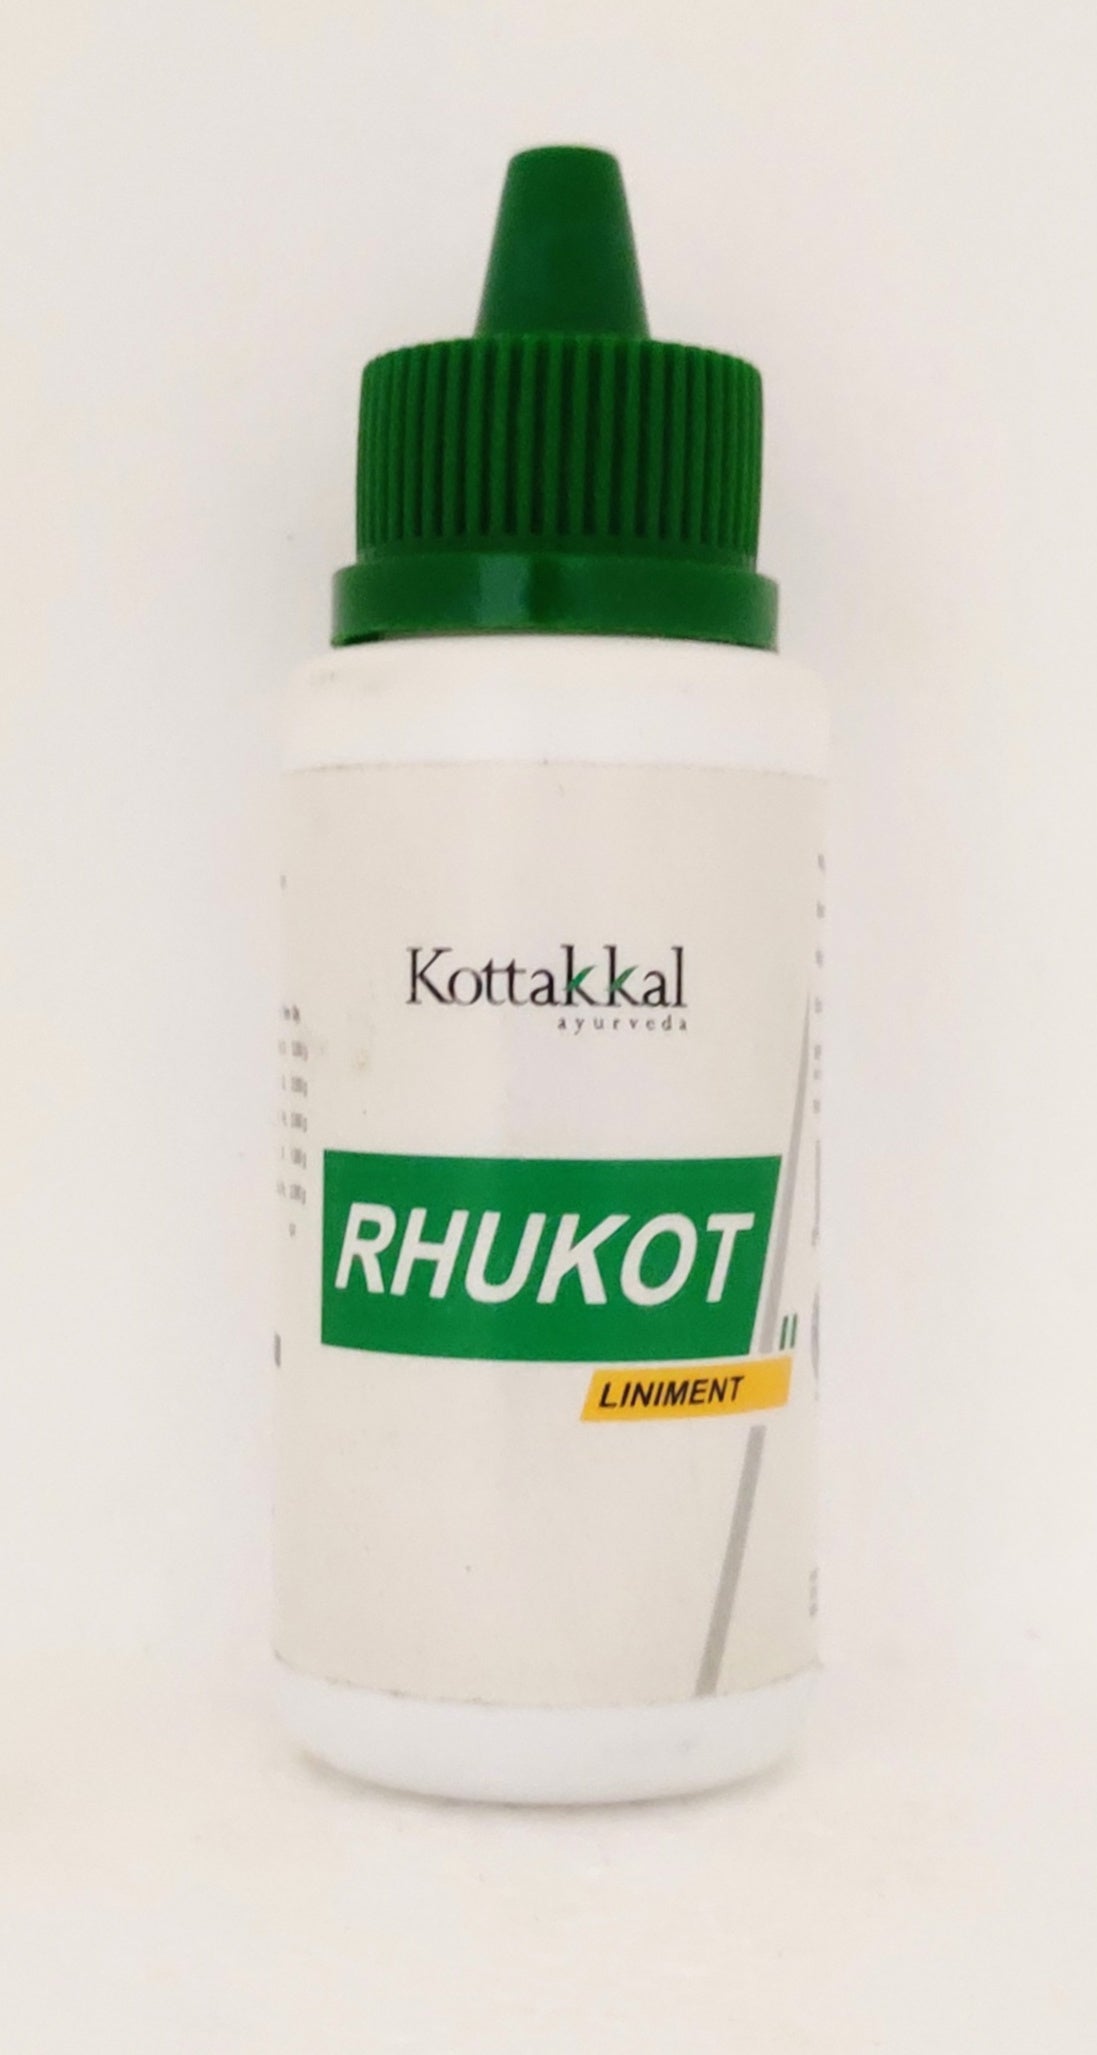 Rhukot liniment oil 60ml -  Kottakkal - Medizzo.com